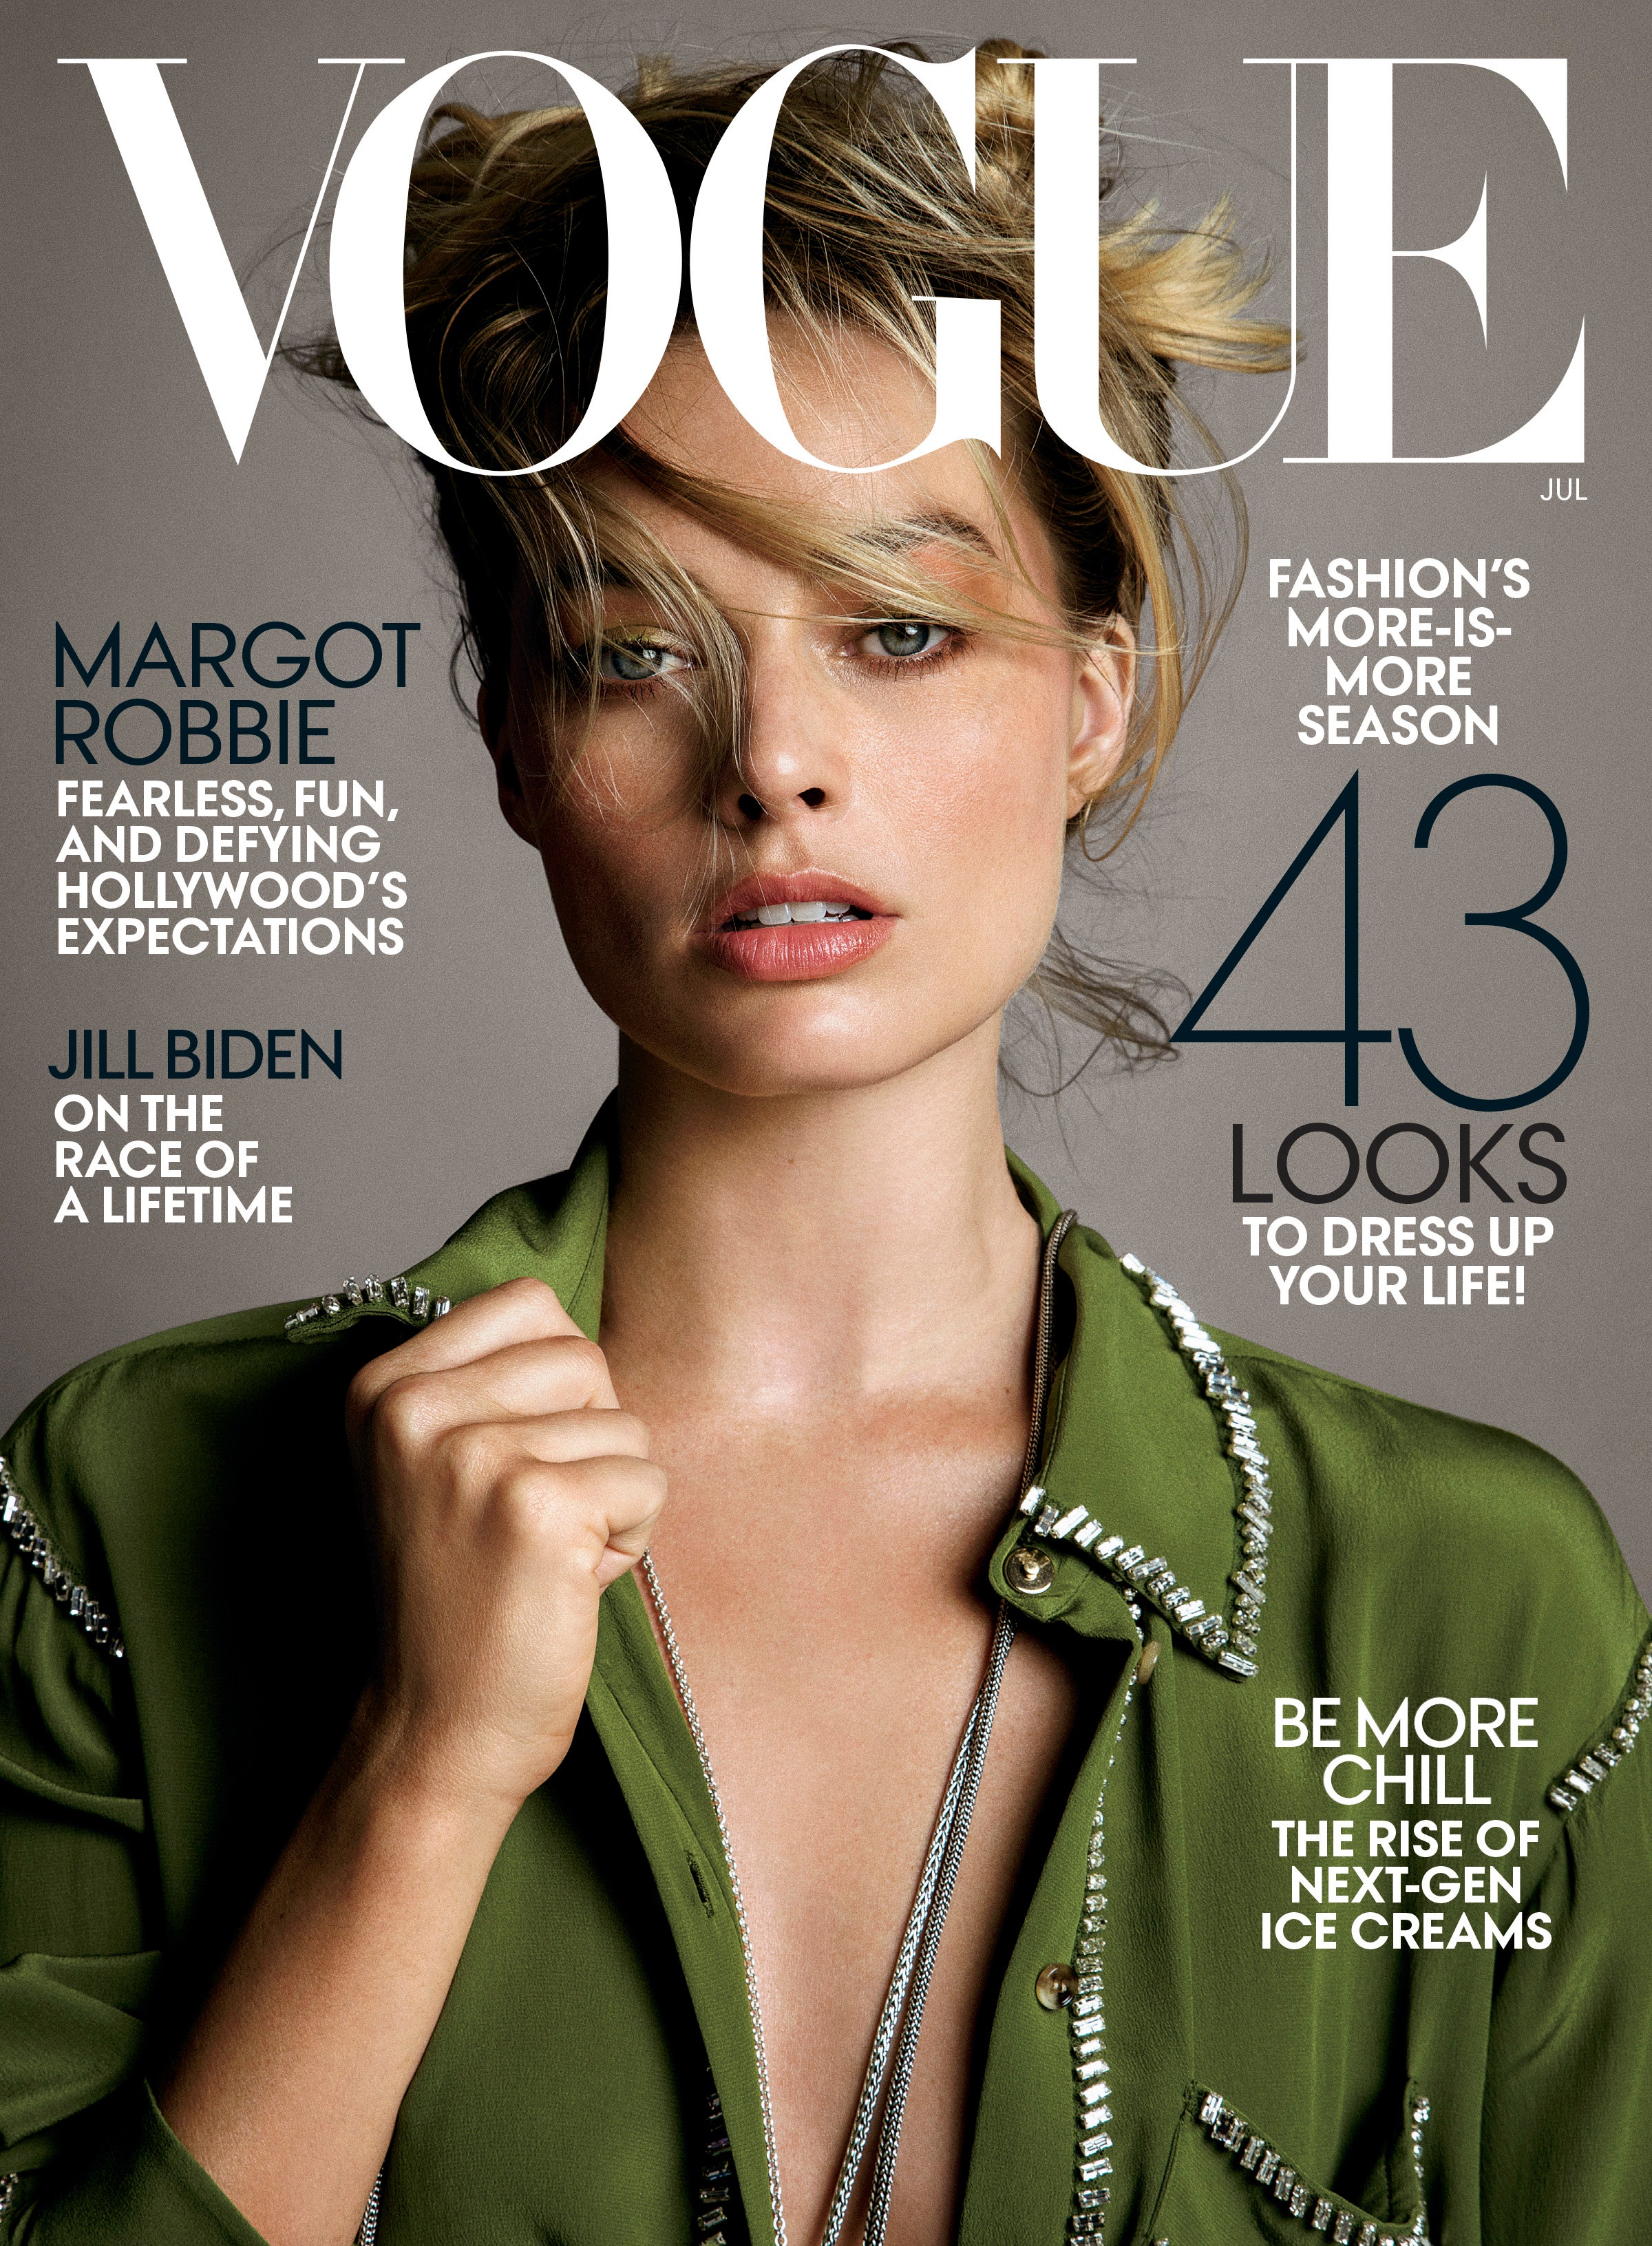 Обложка журнала Vogue. Источник: официальный сайт